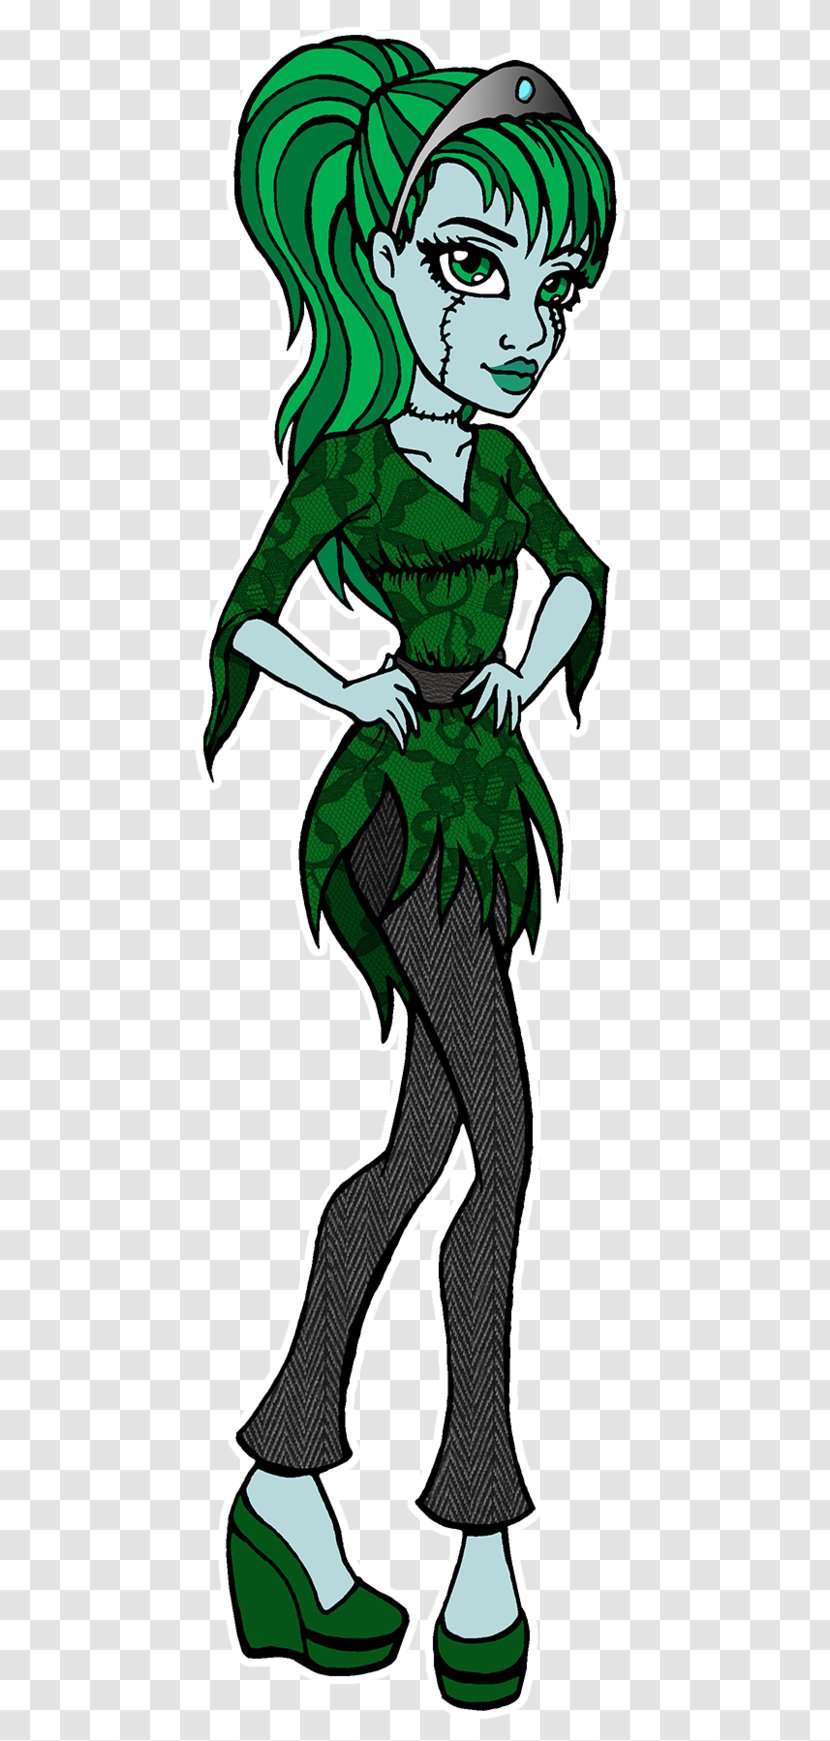 Green Leaf Costume Design Clip Art - Artwork - Corpse Bride Transparent PNG